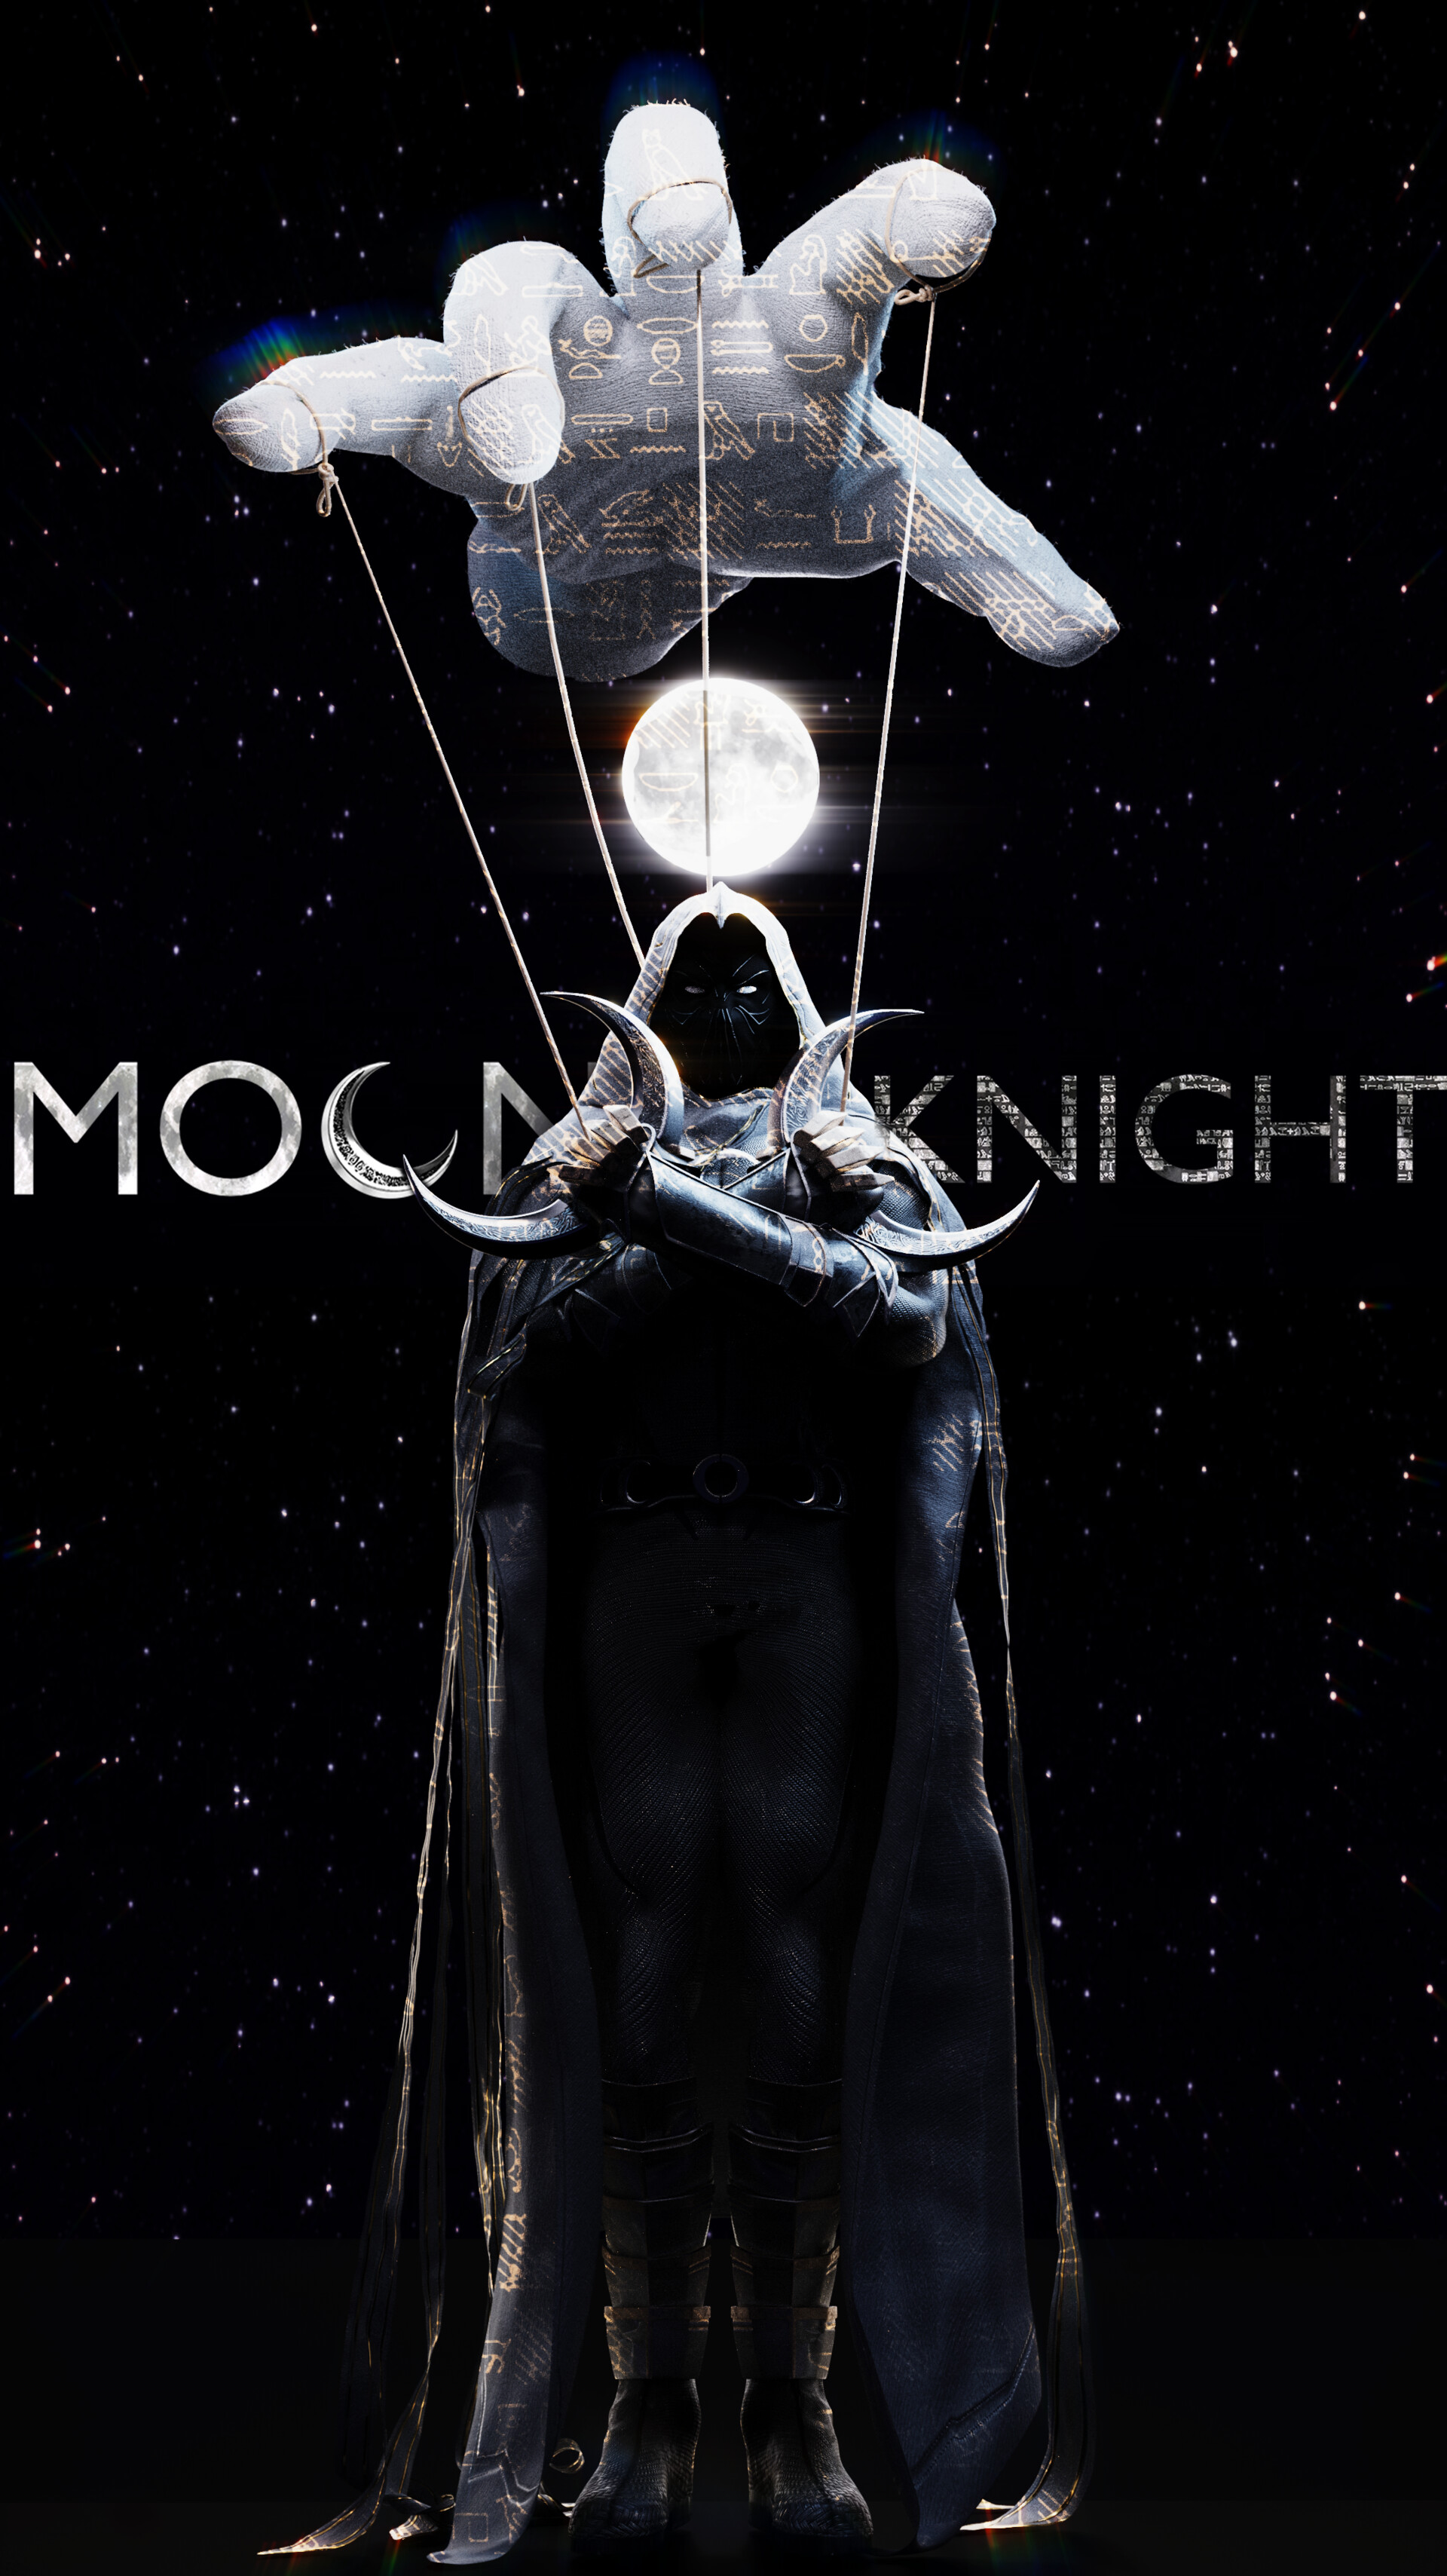 ArtStation - Moon Knight 2 Concept Poster